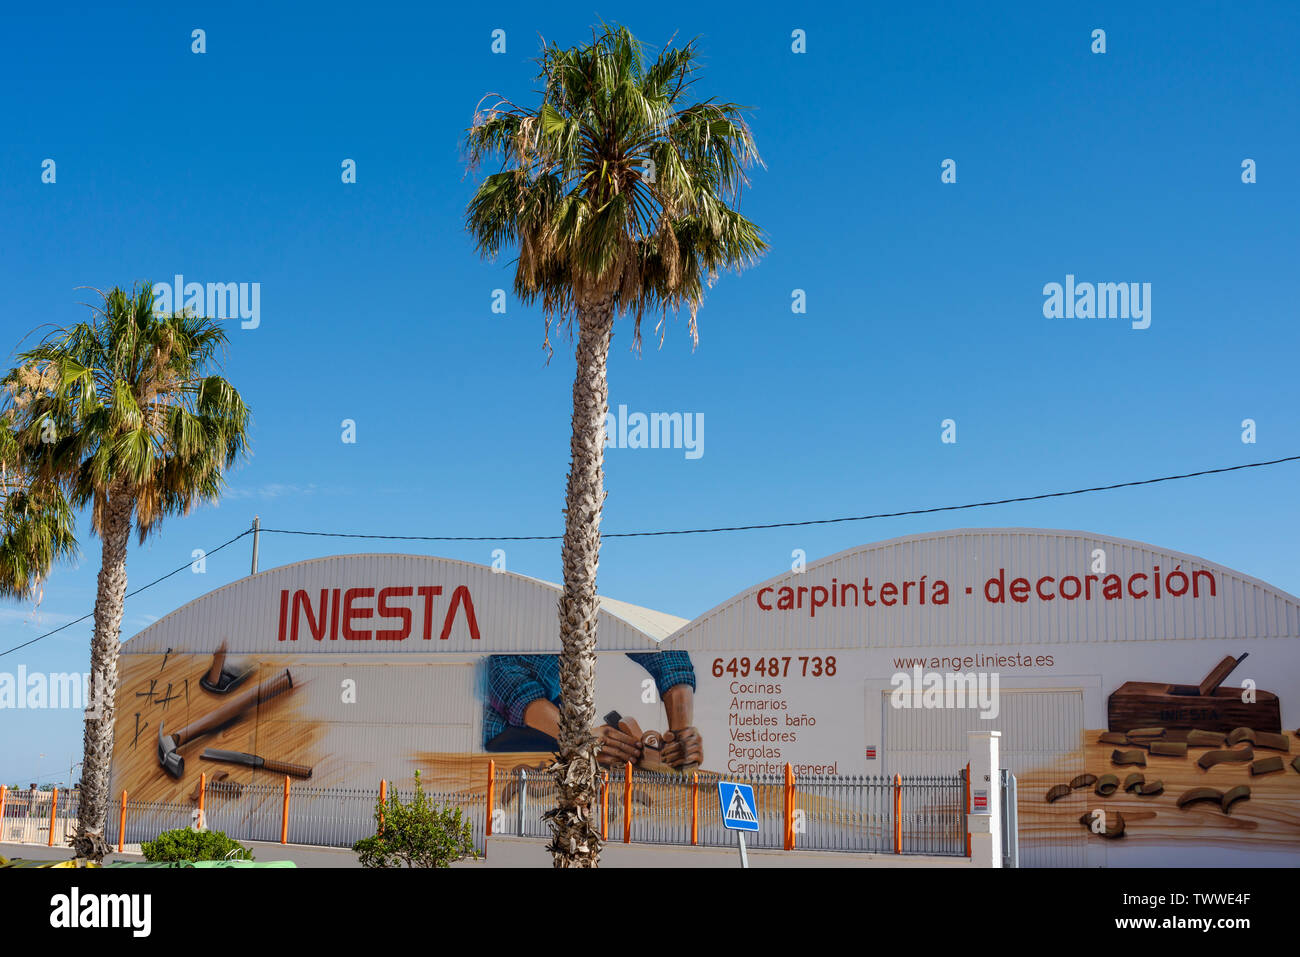 Iniesta Carpinteria, Decoracion store in Sucina, Murcia, Spain, Europe. INIESTA CARPINTERÍA Y DECORACIÓN business. Woodwork, furniture, carpentry Stock Photo